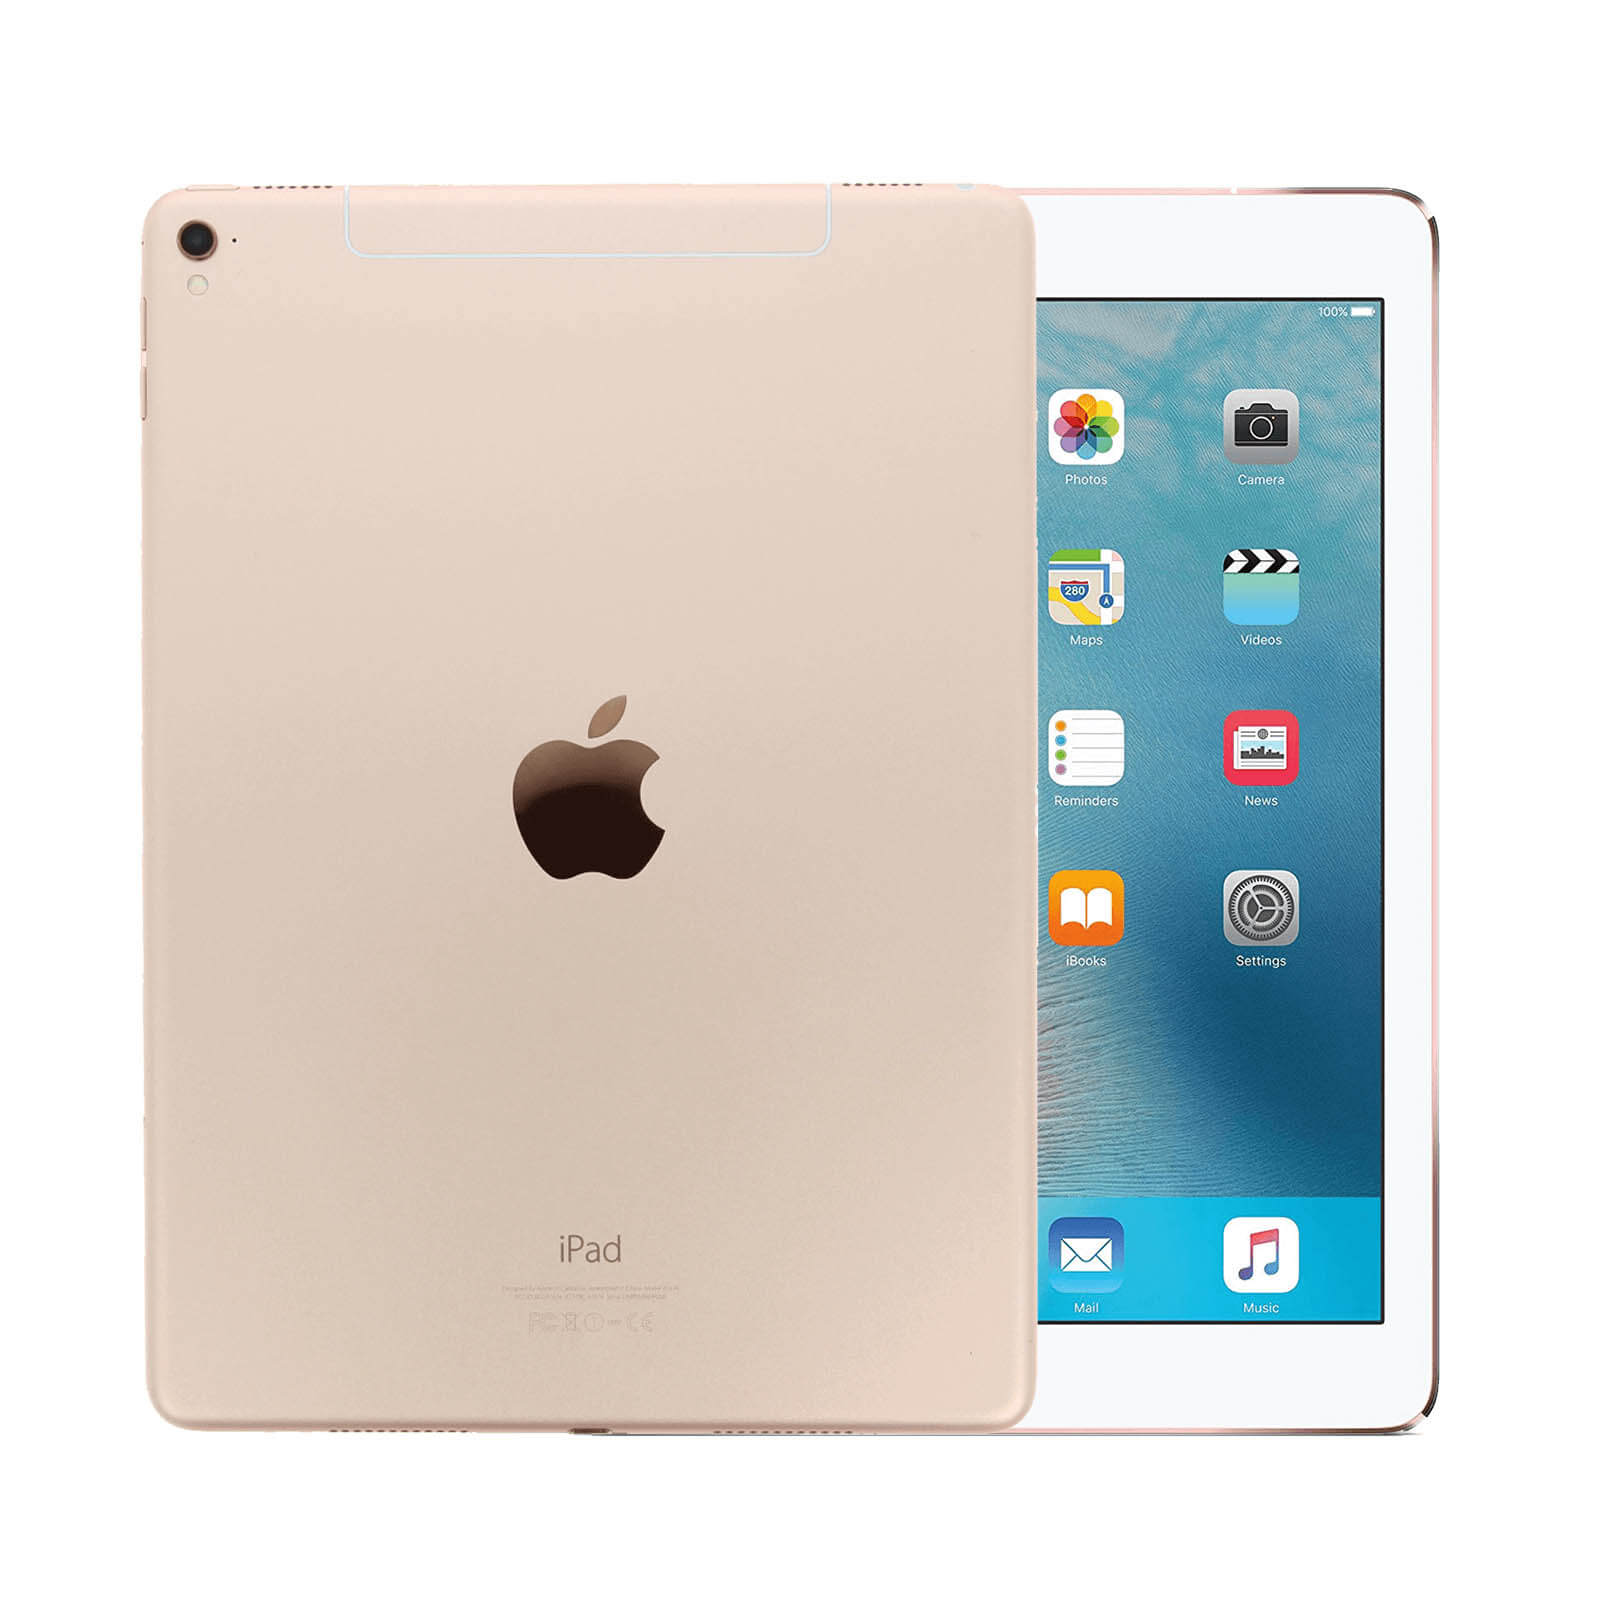 iPad 7 32GB WiFi - Grade C Gold Gut WiFi